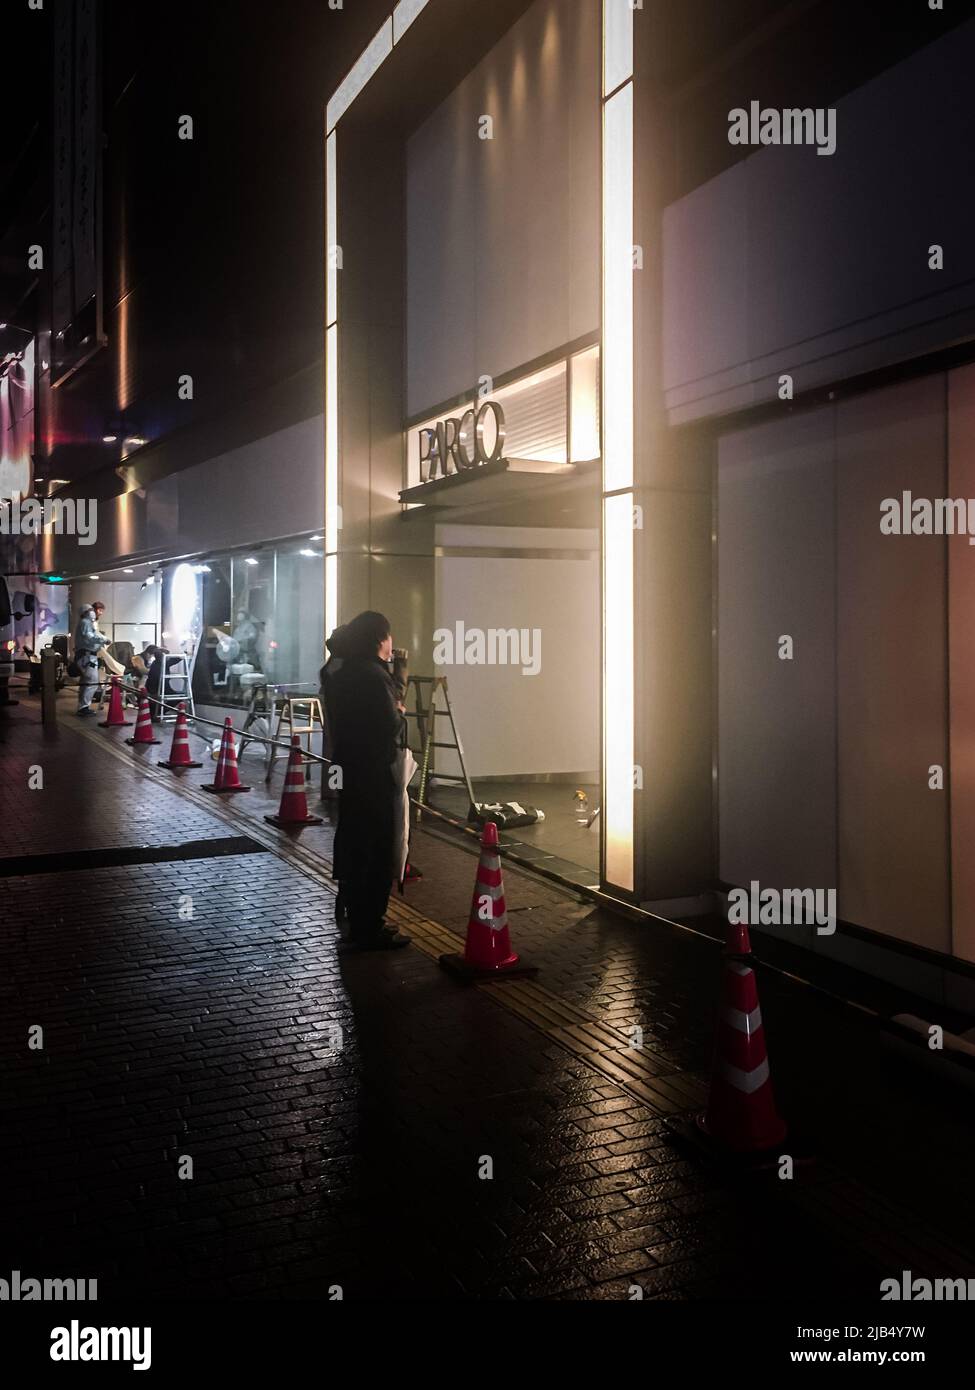 Kumamoto, Japan - 29. Feb 2020 : das Bild des Kumamoto PARCO und der Menschen in der Nacht. Kumamoto PARCO, eröffnet im Jahr 1987, wurde am 29. Februar 2020 geschlossen. Stockfoto